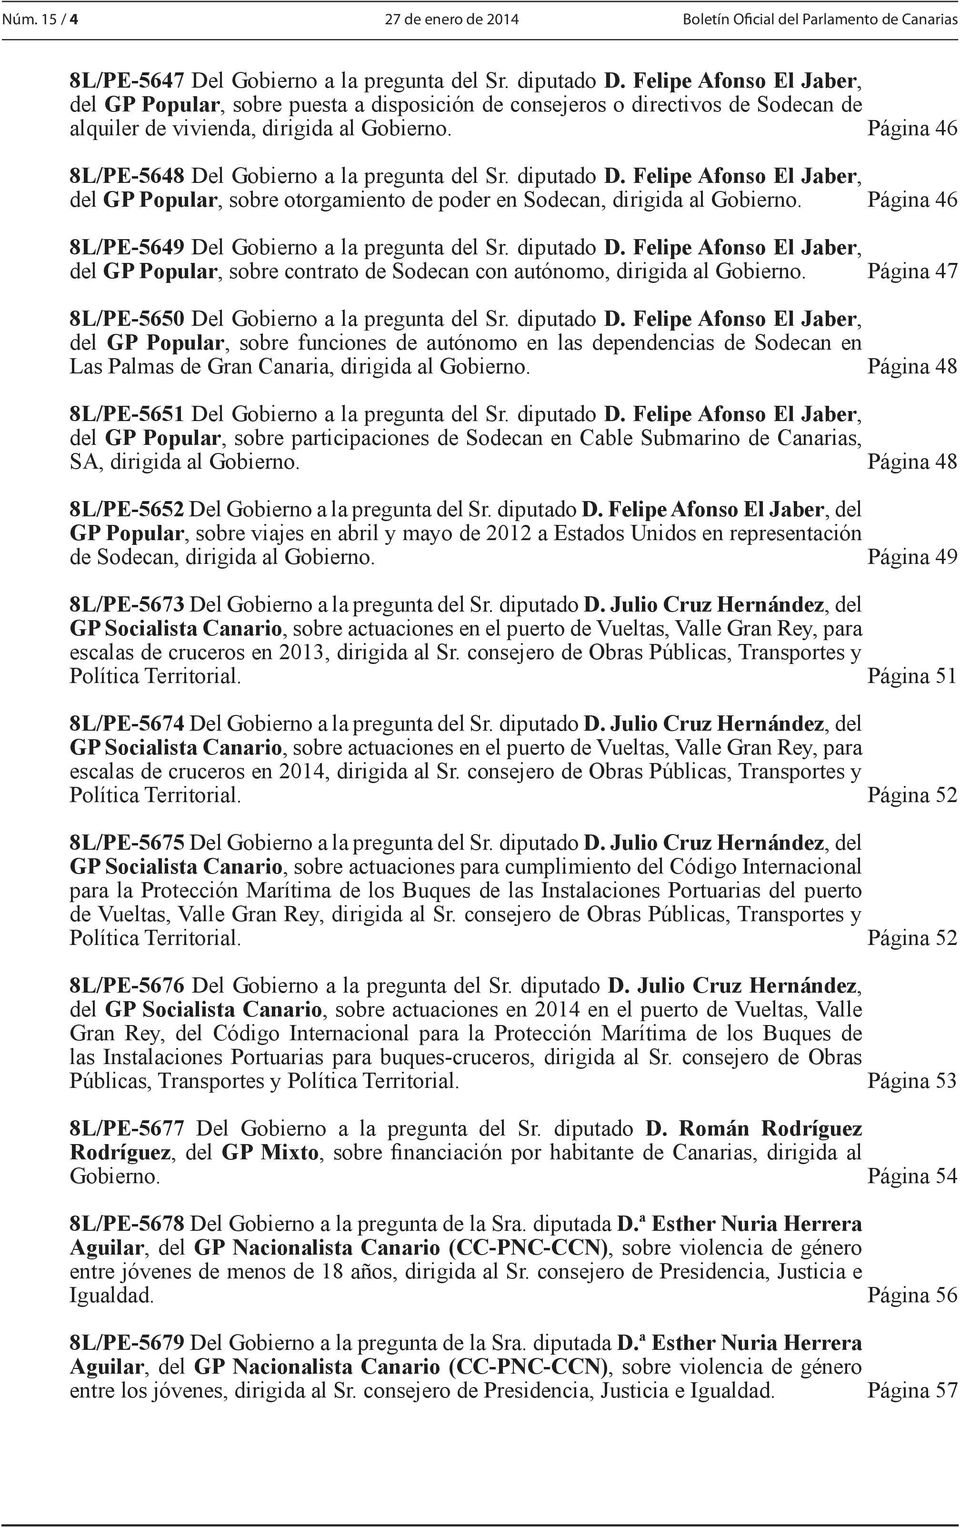 Página 46 8L/PE-5648 Del Gobierno a la pregunta del Sr. diputado D. Felipe Afonso El Jaber, del GP Popular, sobre otorgamiento de poder en Sodecan, dirigida al Gobierno.